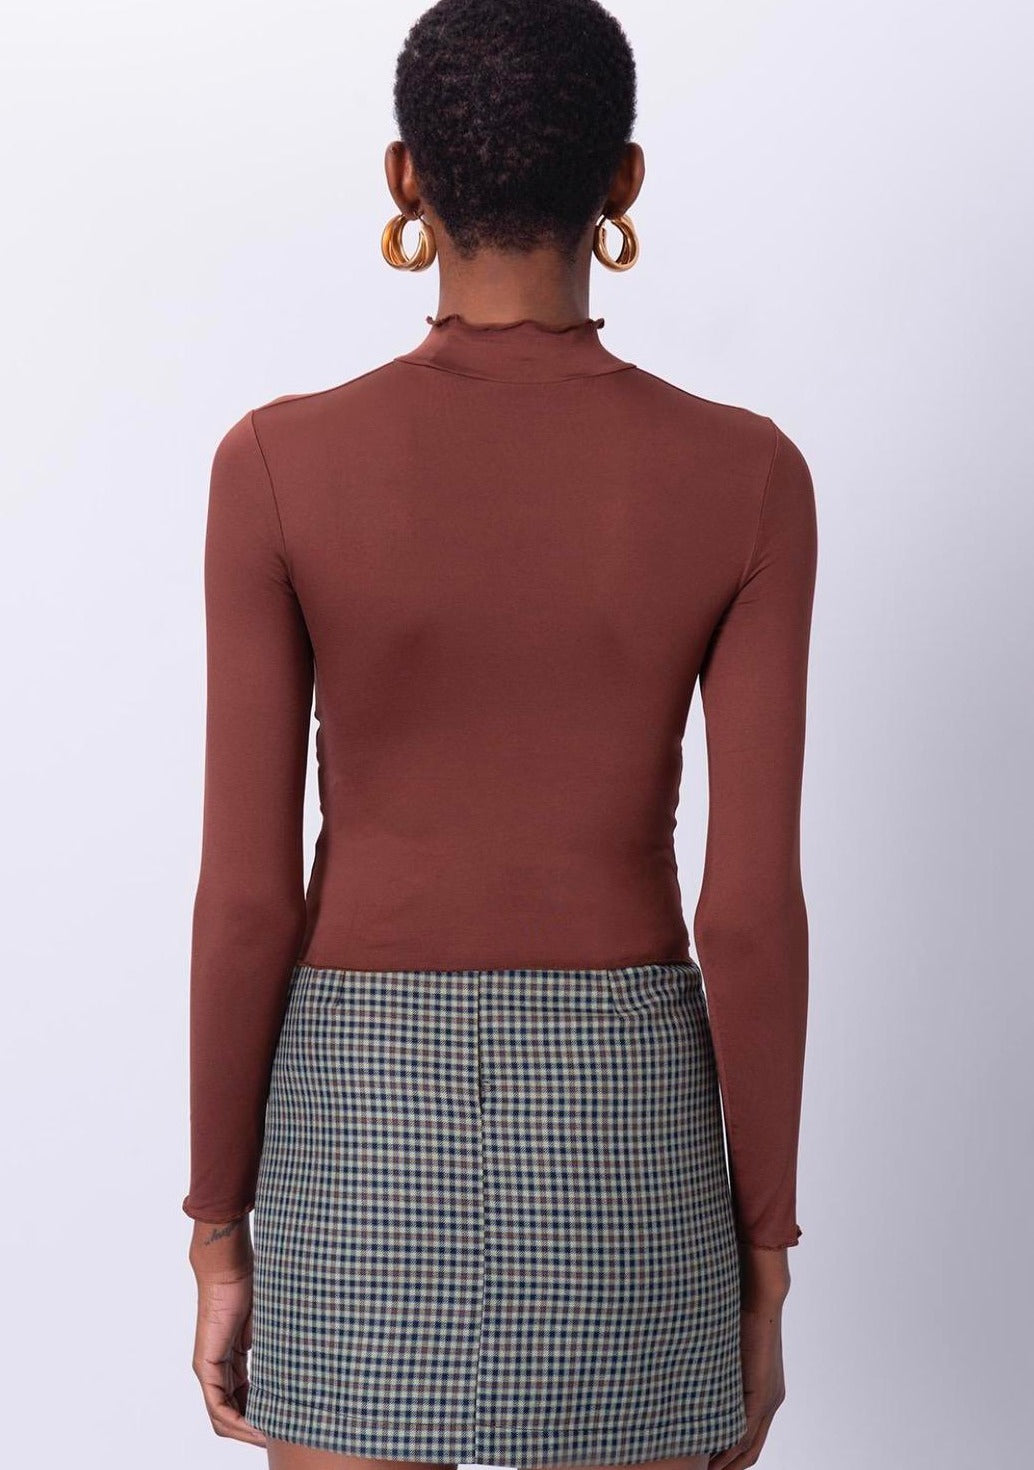 Дамска блуза NERVIDA  https://bvseductive.com/products/дамска-блуза-nervida  5 % еластан 95 % пoлиестер впечатляваща дамска блуза в кафяв цвят моделът е с къса секси дължина и набор отпред изключително красива визия с блуза&nbsp;NERVIDA